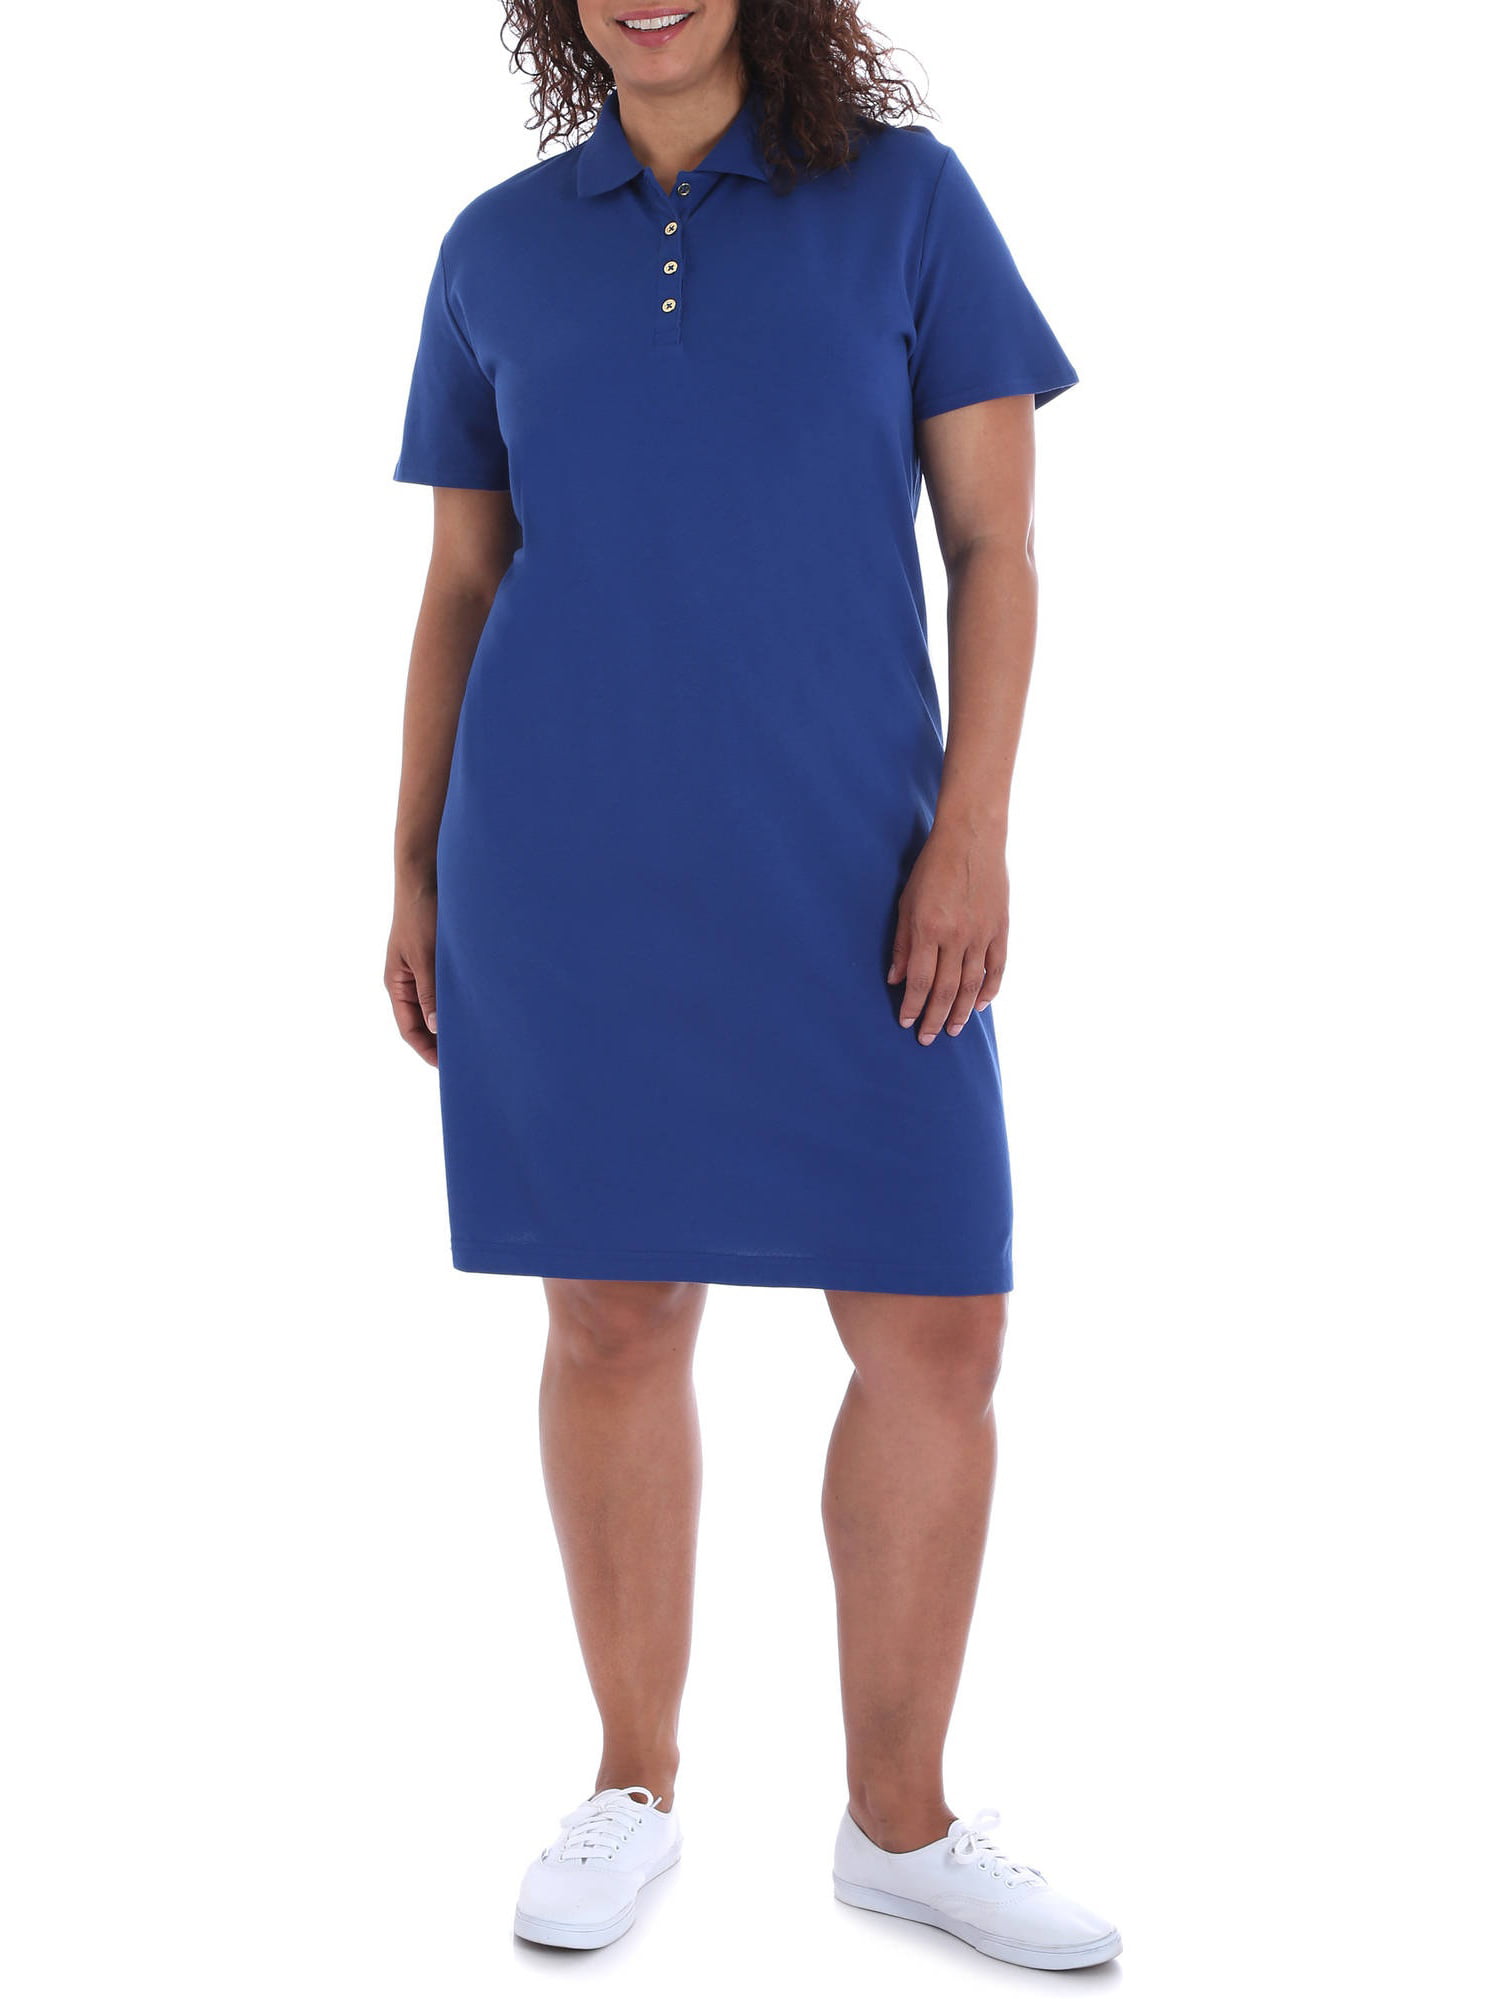 Polo Shirt Dress Plus Size | Dresses Images 2022